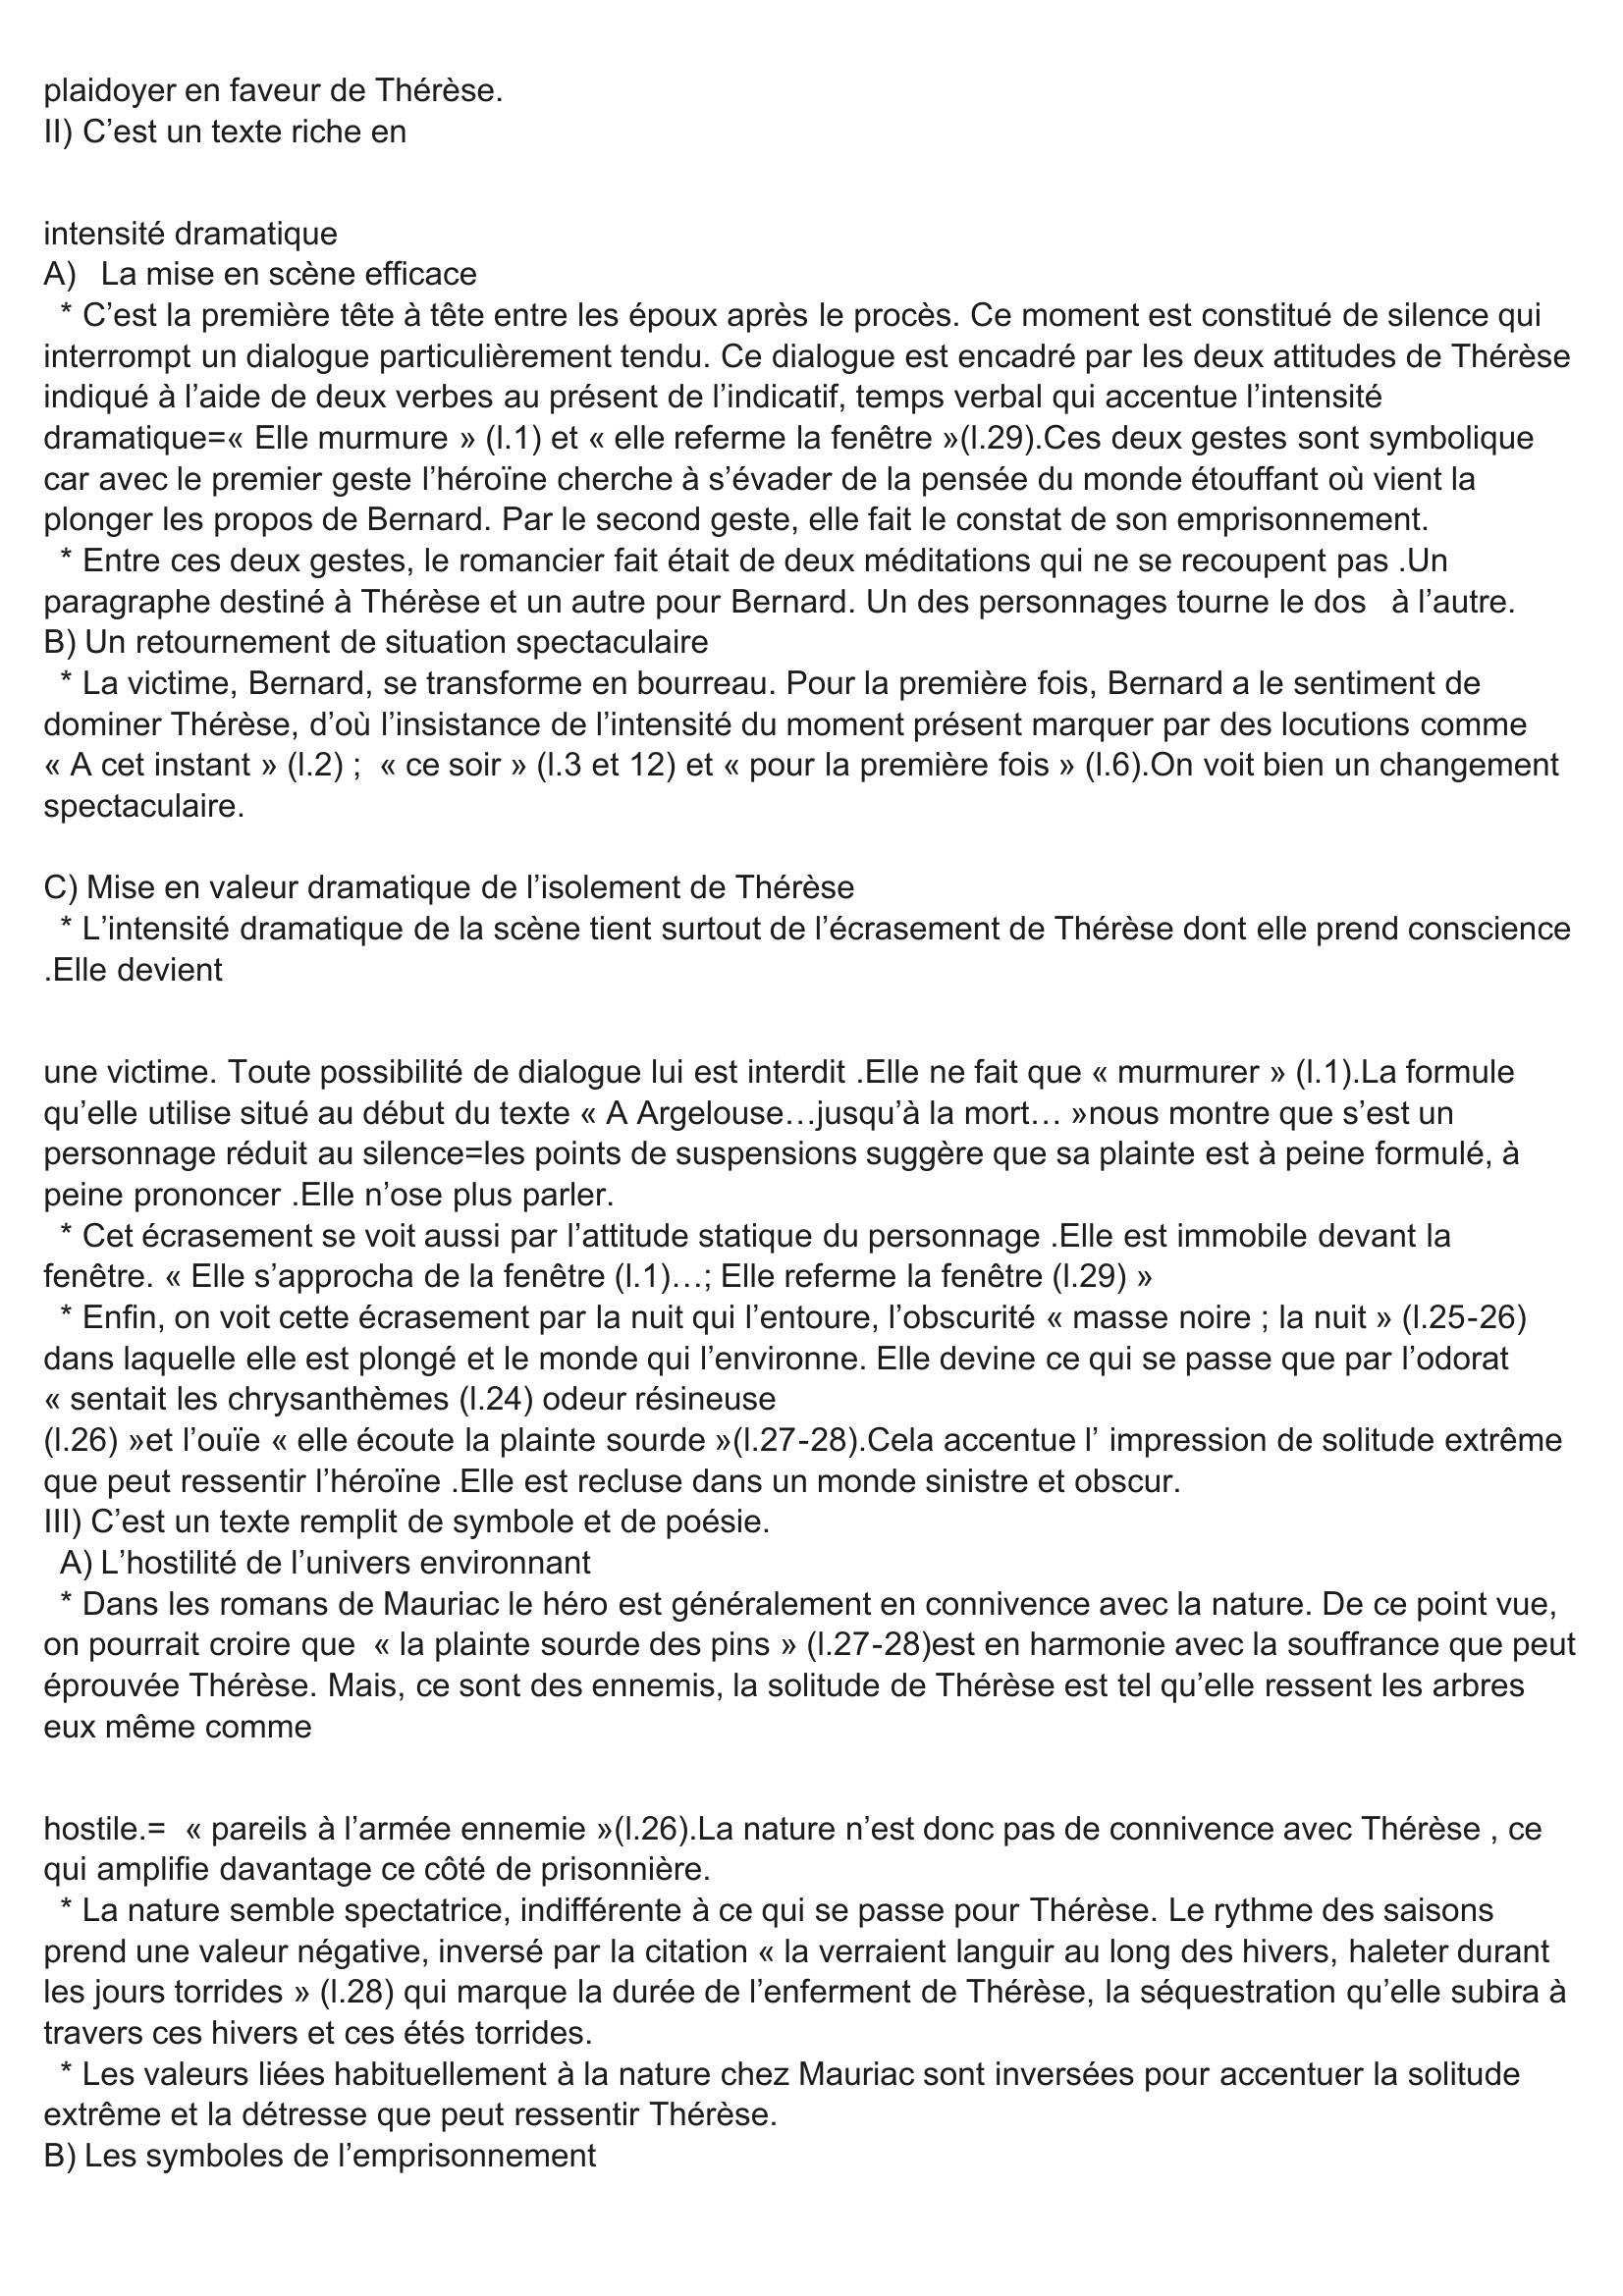 Prévisualisation du document François Mauriac, Thérèse Desqueyroux (1927) : Chapitre IX (Extrait 1 : A Argelouse …jusqu'à la mort)